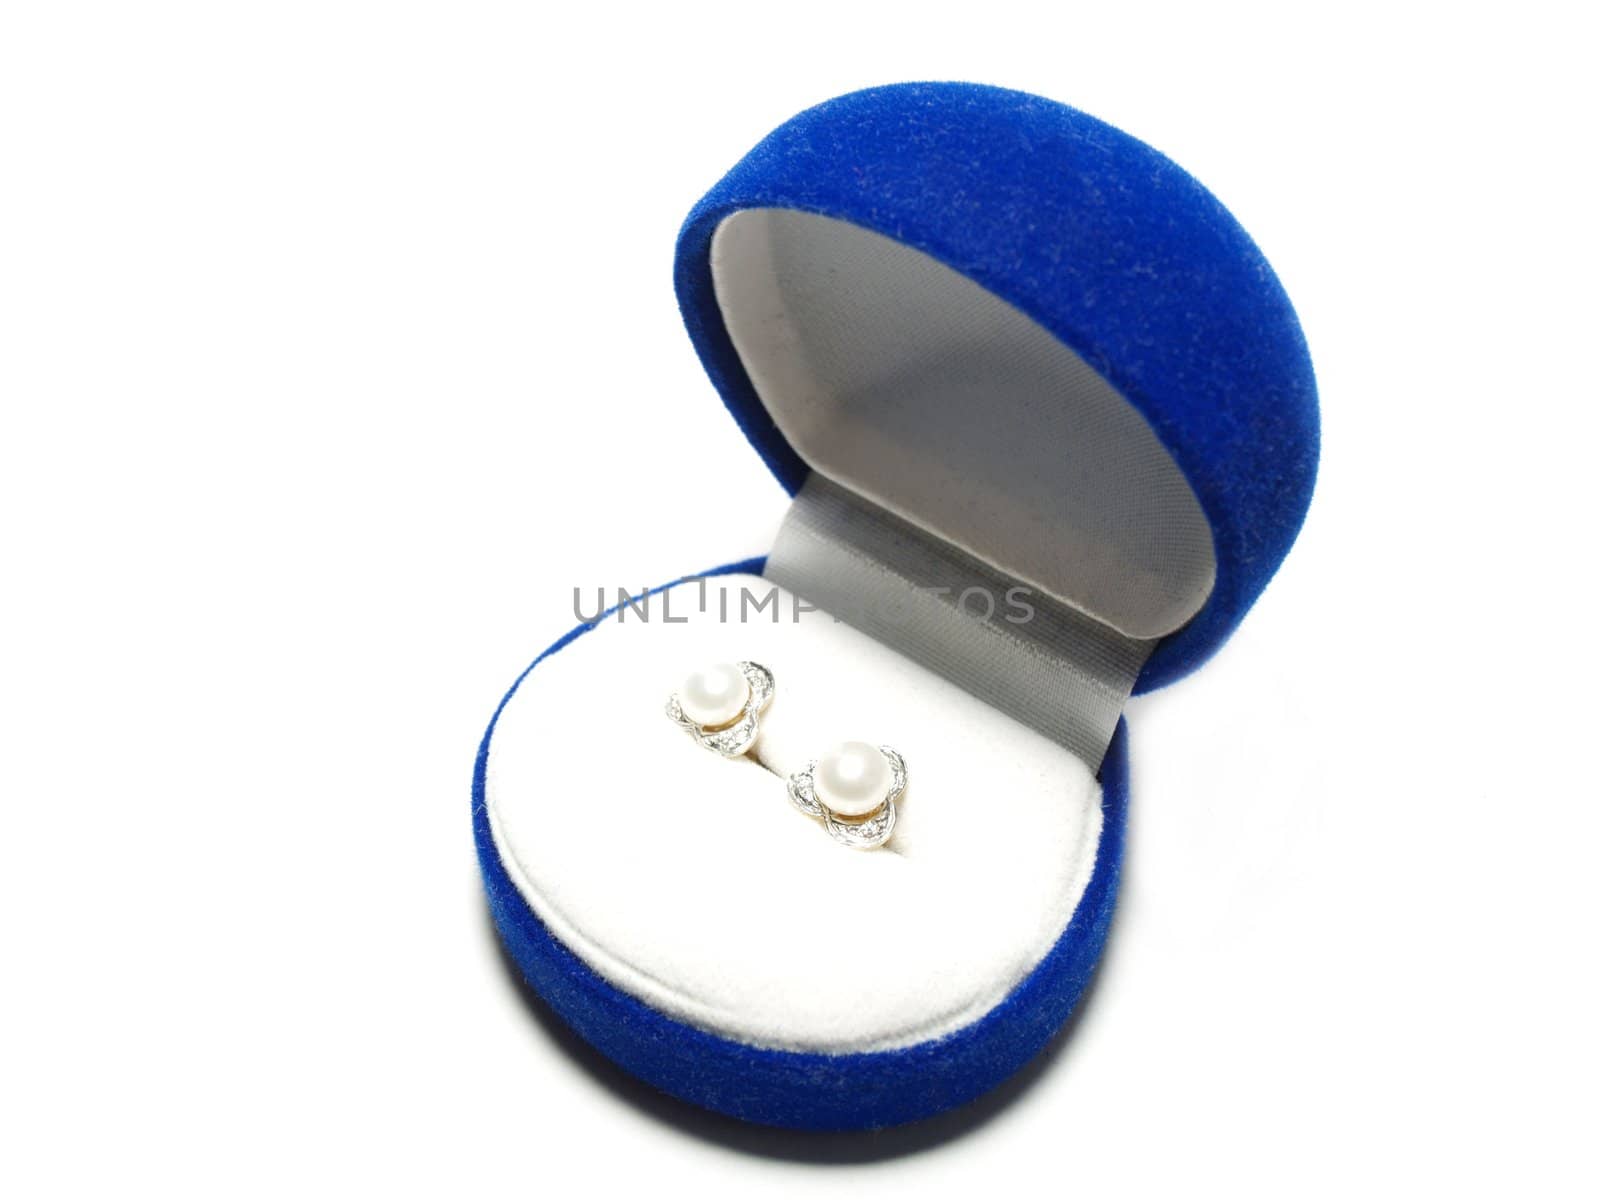 Earrings in a blue box